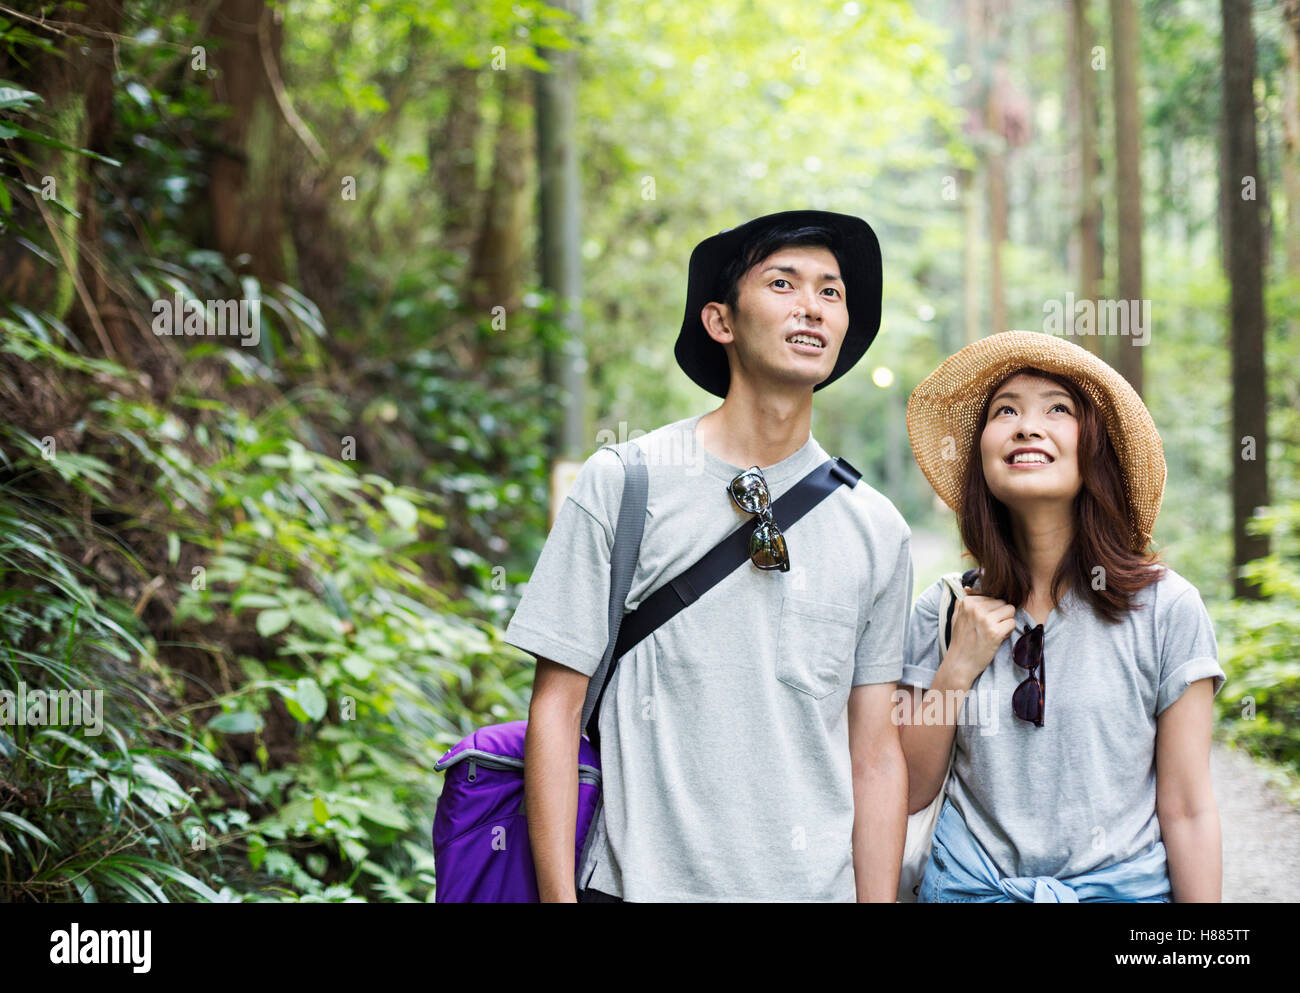 Lächelnde junge Frau und Mann in einem Wald. Stockfoto